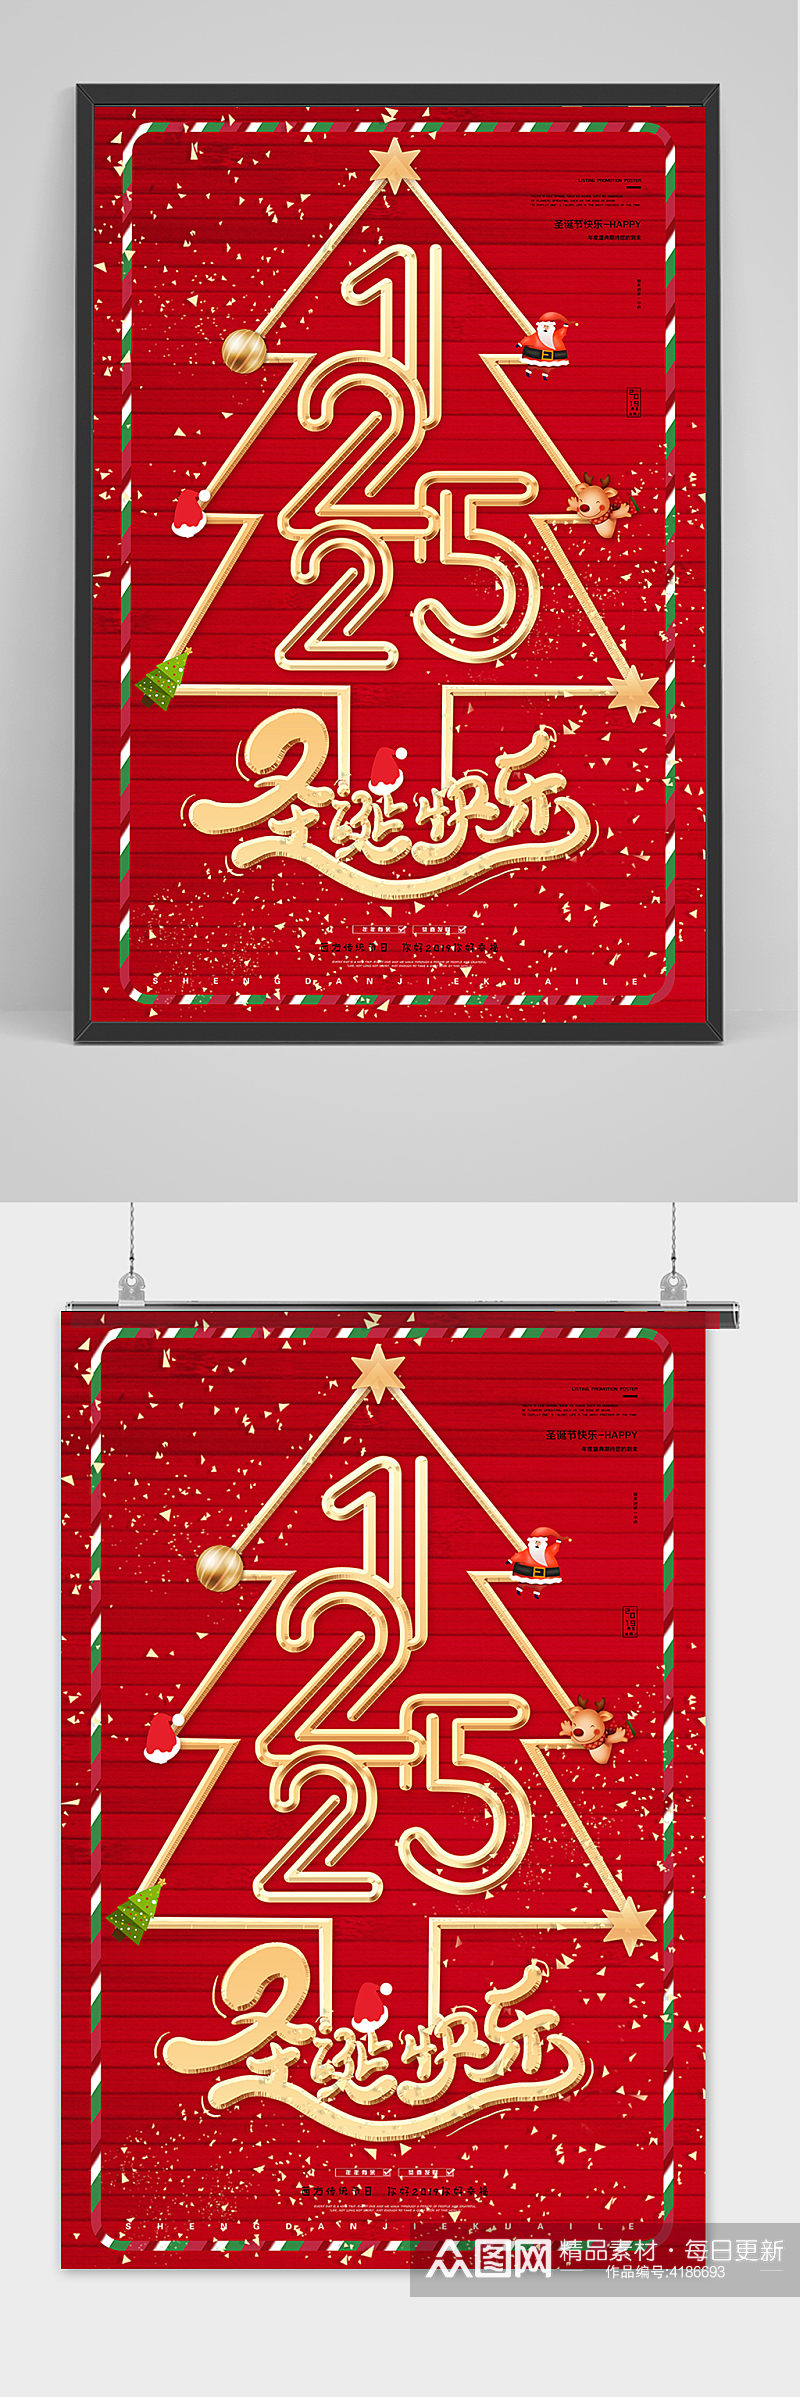 红色大气创意圣诞快乐圣诞节海报素材